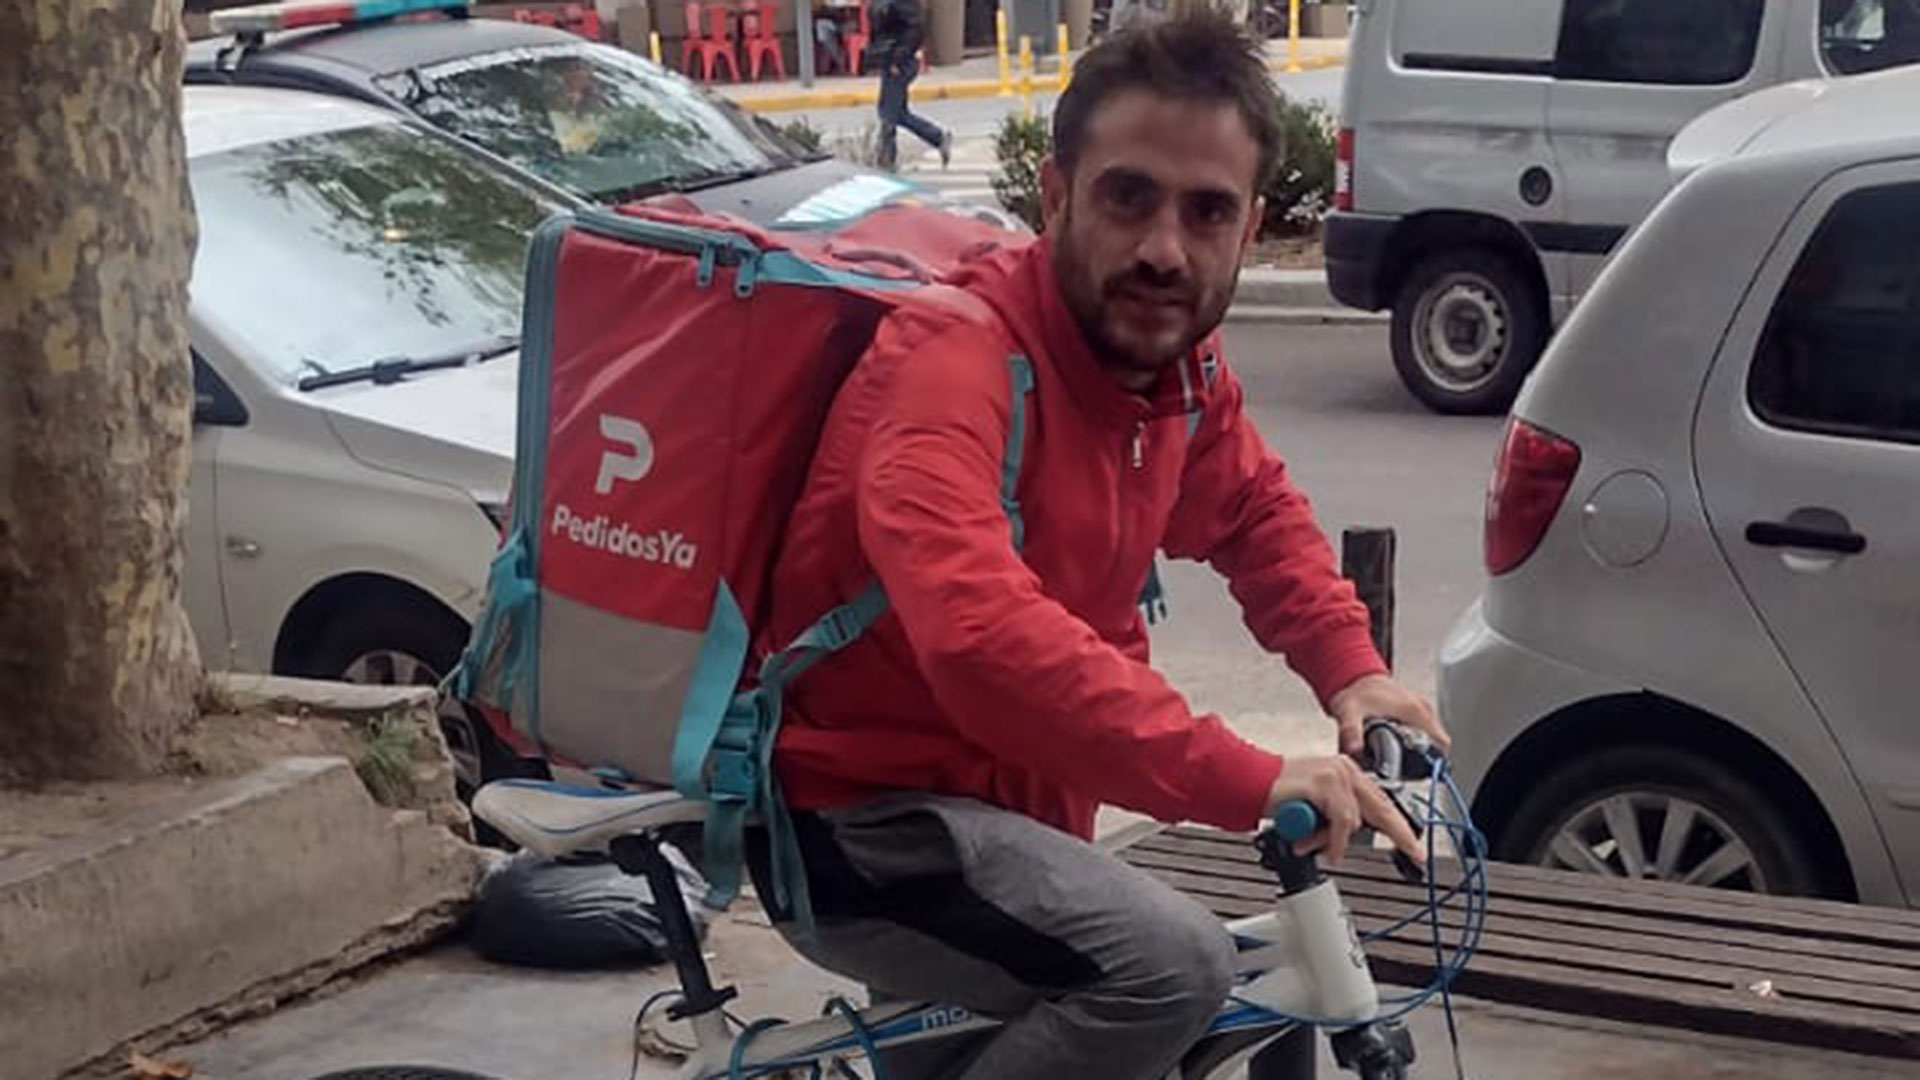 Sobre su bicicleta con la mochila de la aplicación de delivery con que trabaja en las calles de La Plata